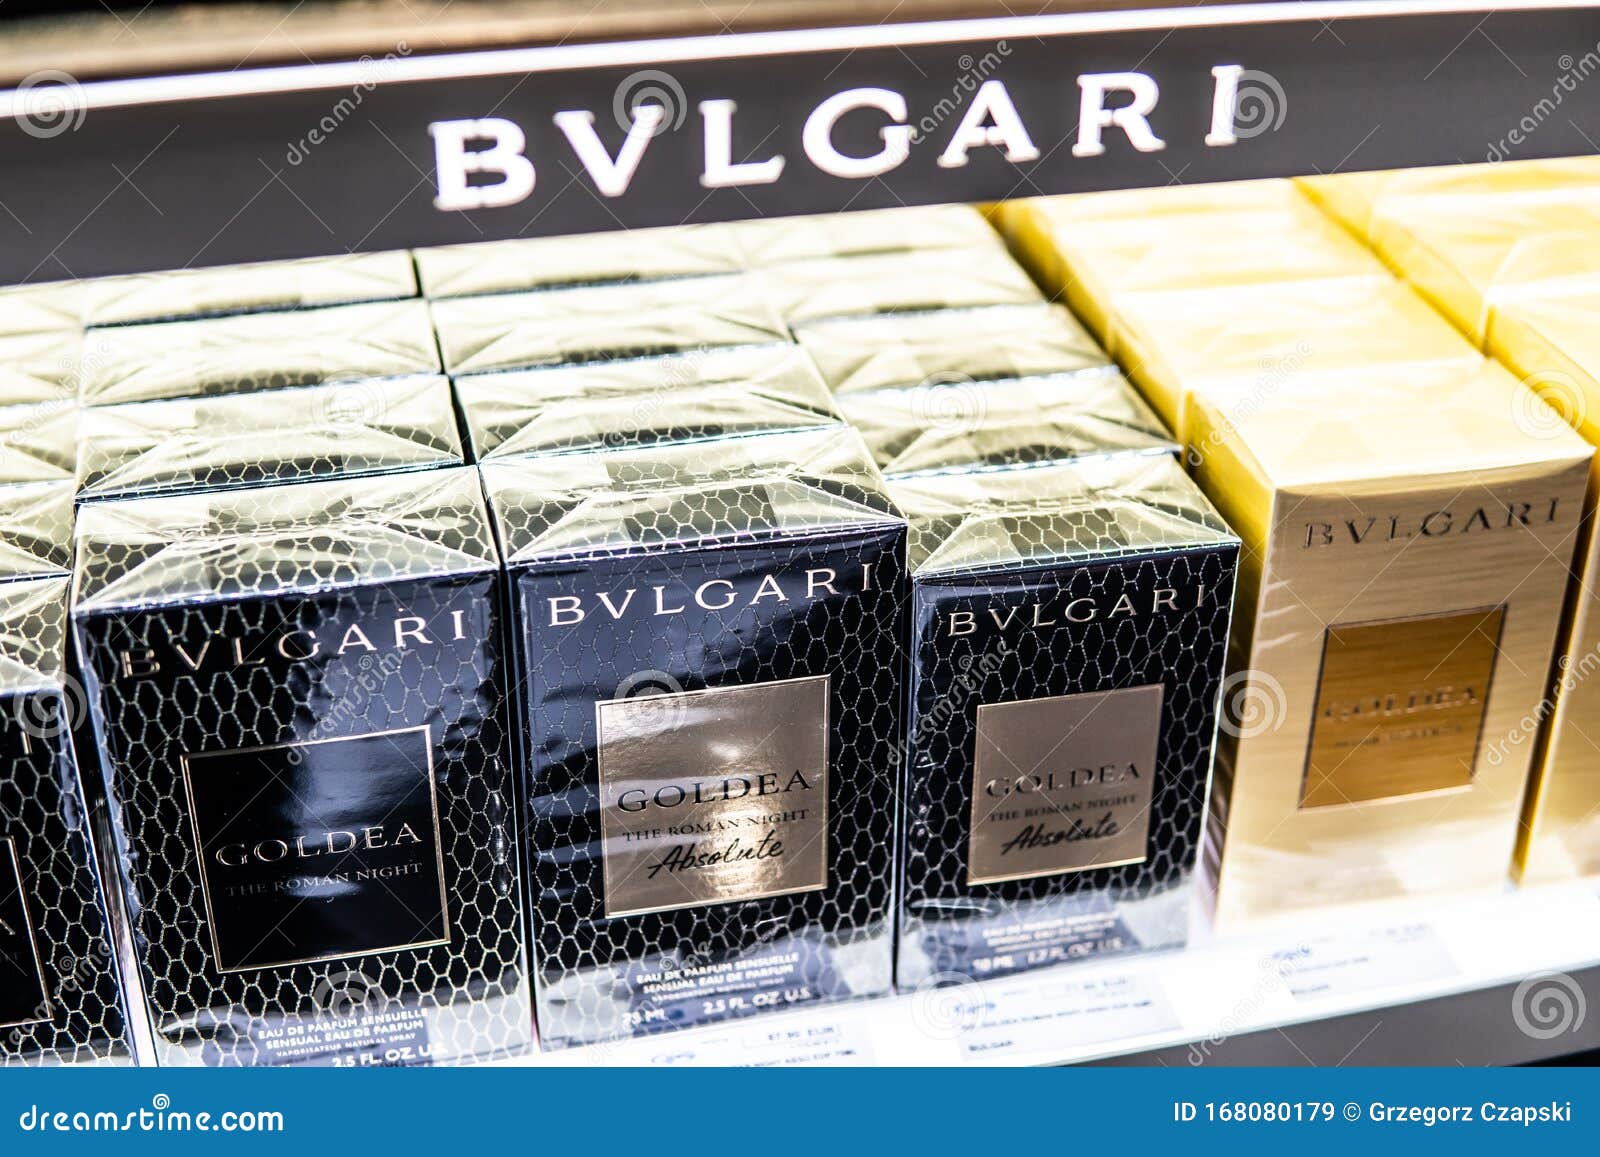 bvlgari perfume license